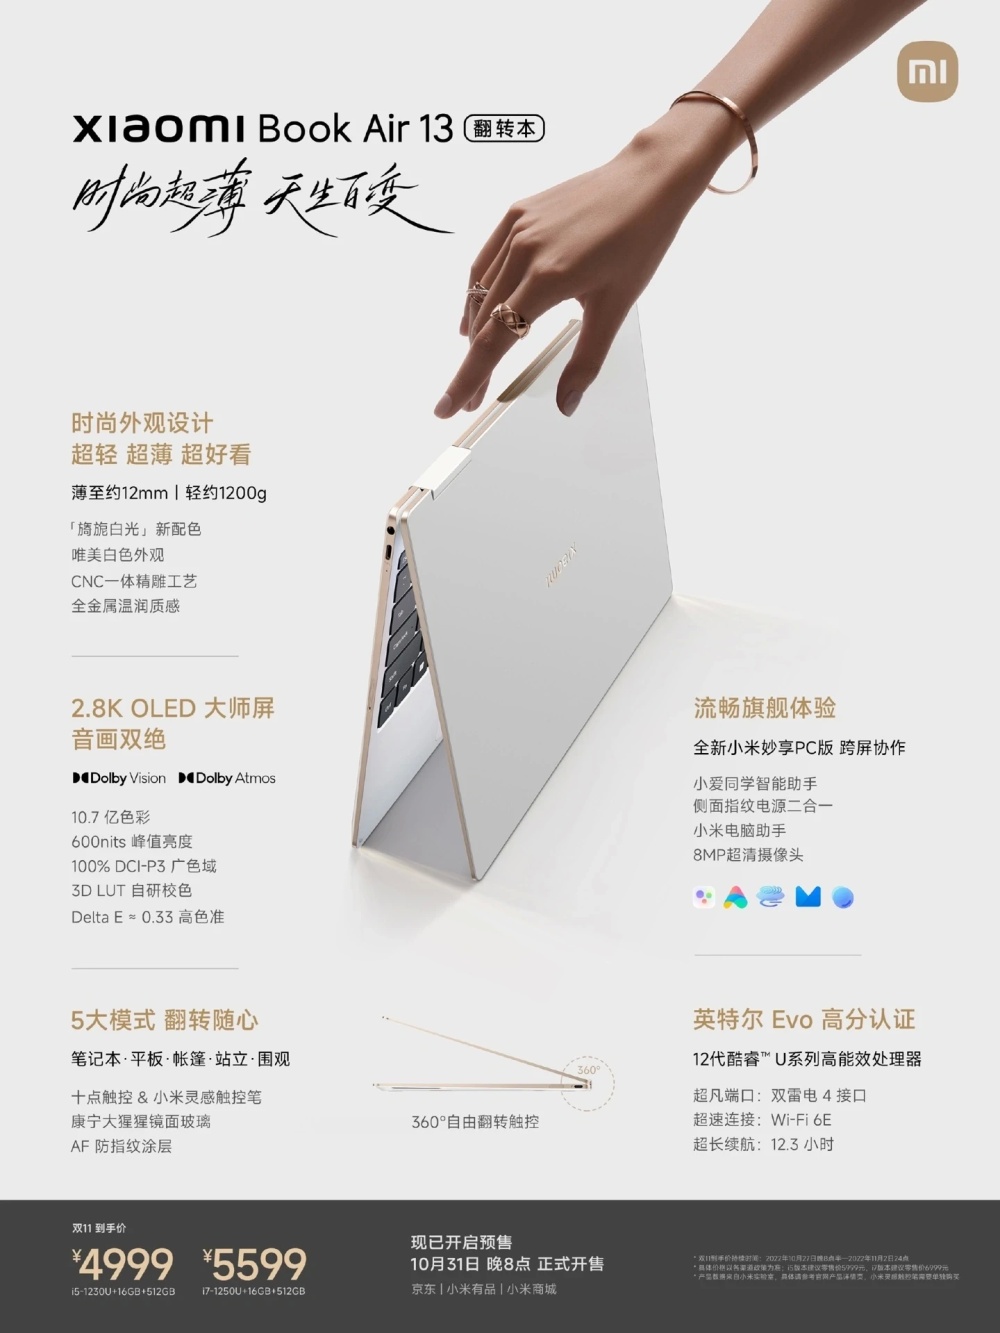 Представлен Book Air 13 - самый тонкий ноутбук Xiaomi, к тому же еще и «трансформер»